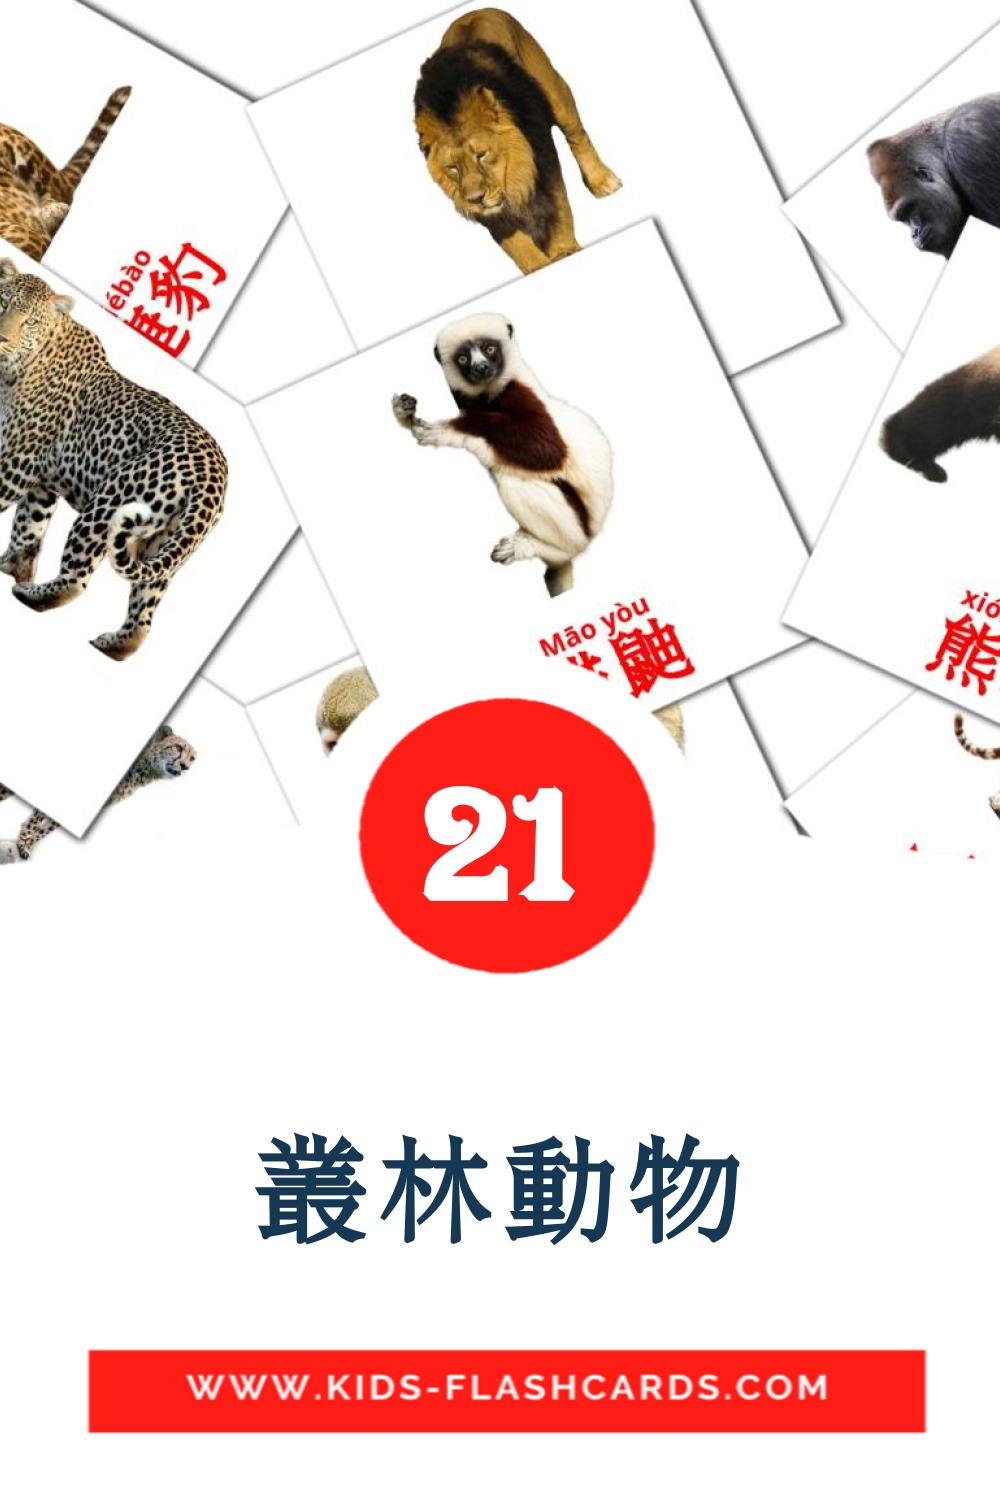 21 Cartões com Imagens de 叢林動物 para Jardim de Infância em cantonês(coloquial)